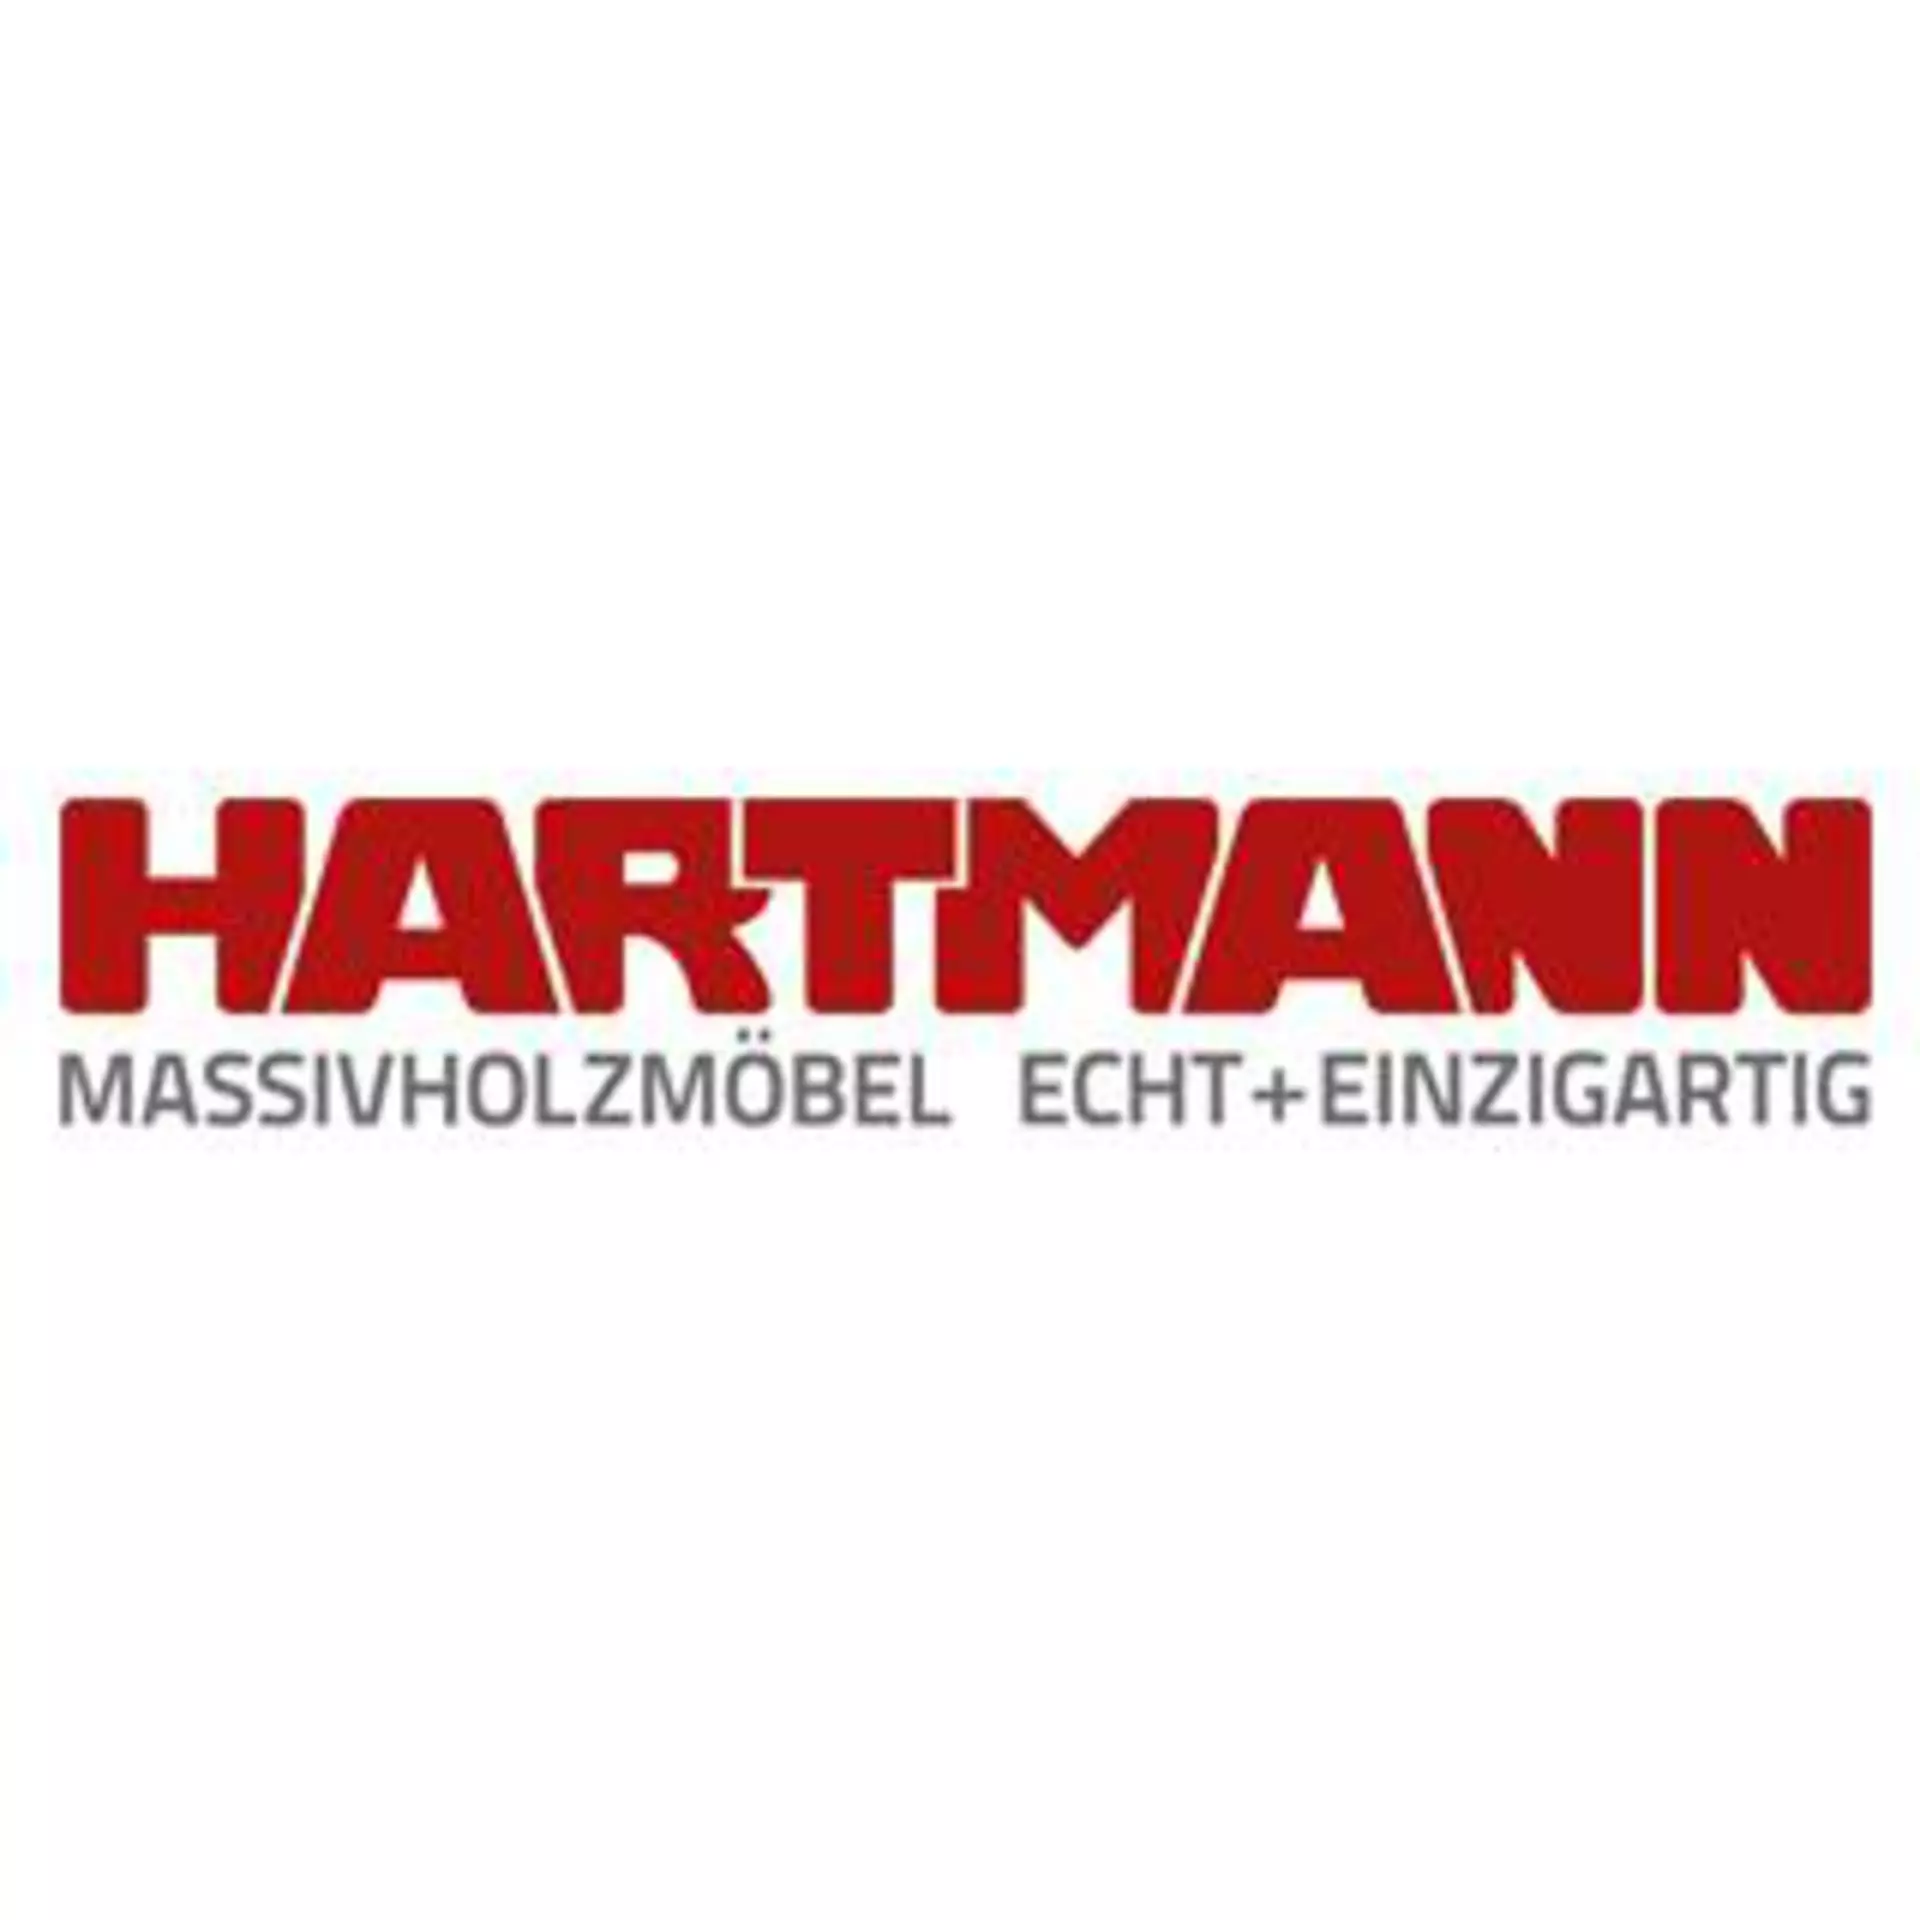 Hartman - Massivholzmöbel bei Möbel Inhofer